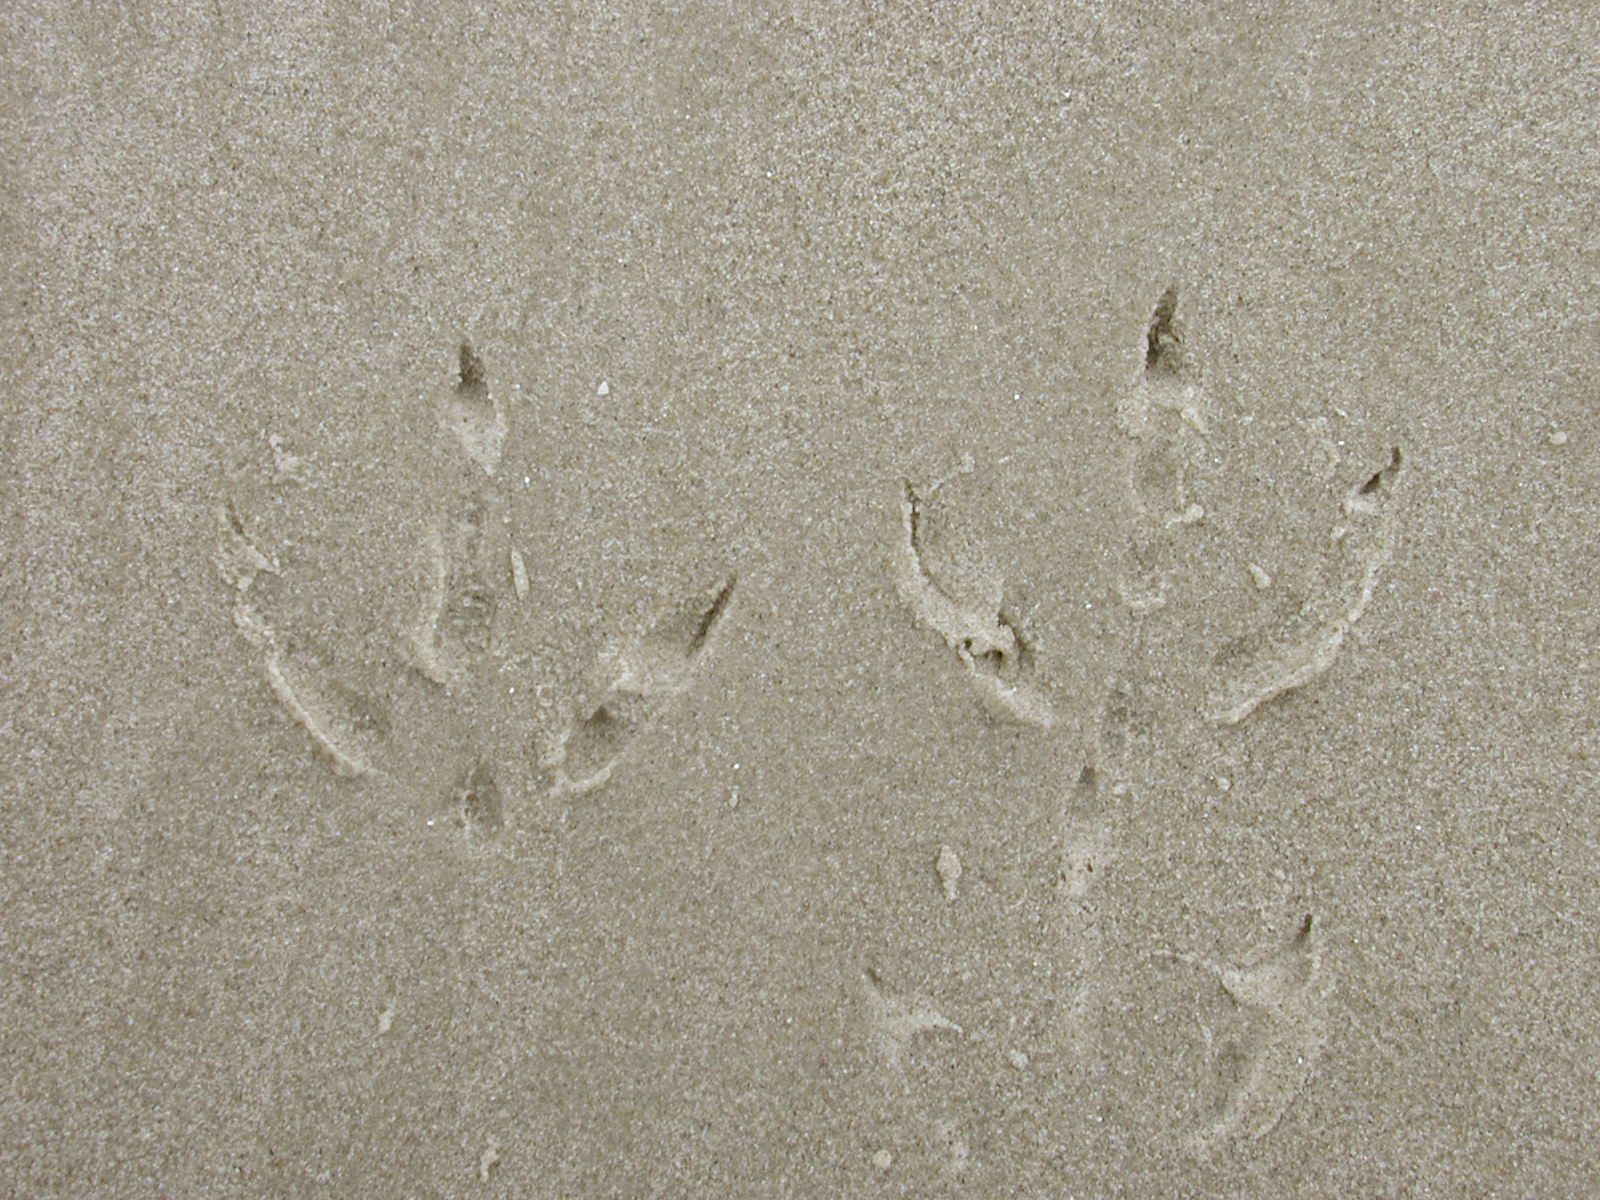 sand beach footprints birdprints prints foot feet ground texture wet